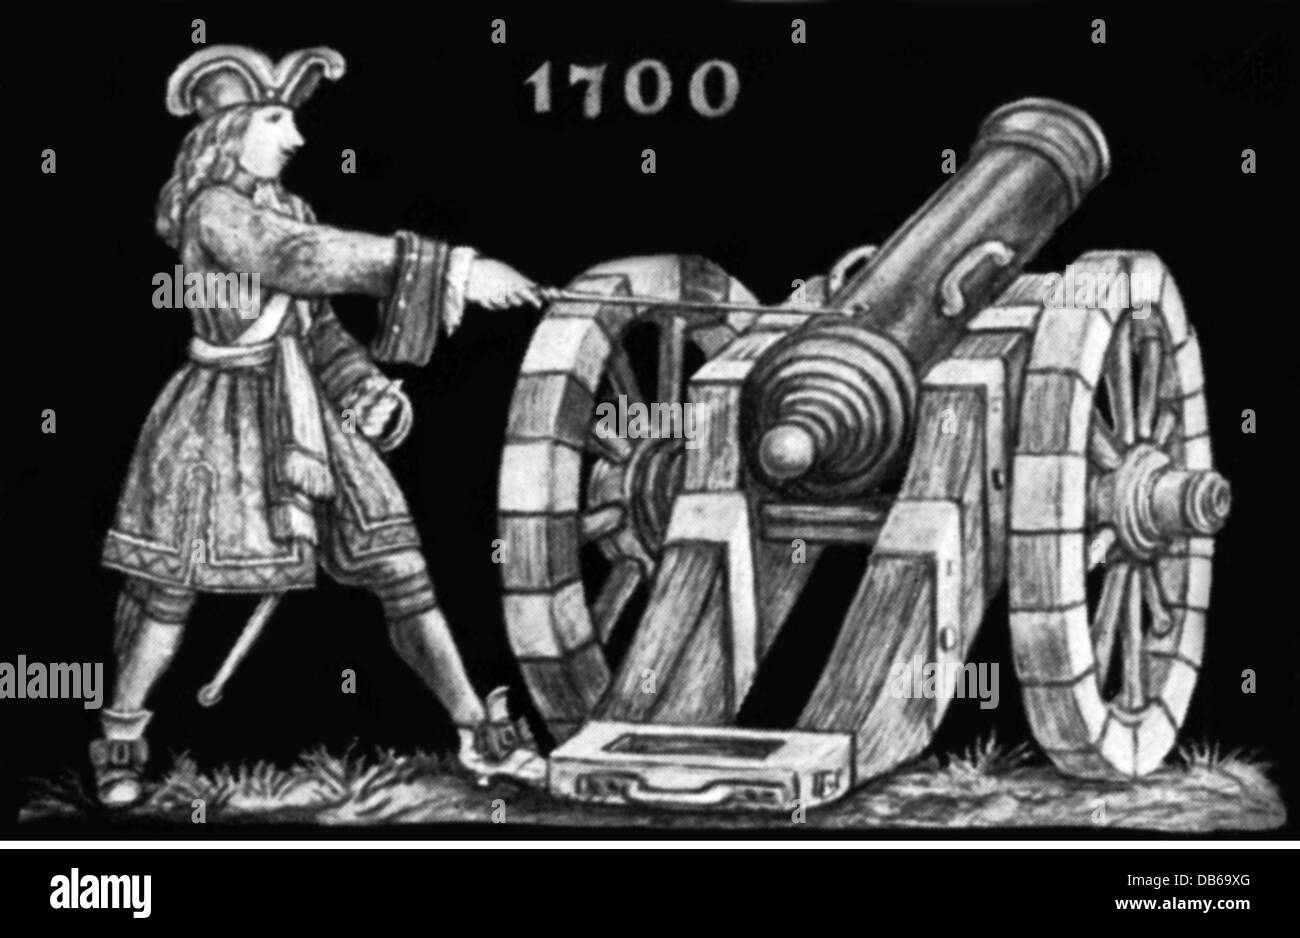 Militaire, artillerie, arme à feu et artileryman, 1700, illustration après une frise "le développement du canon", droits additionnels-Clearences-non disponible Banque D'Images